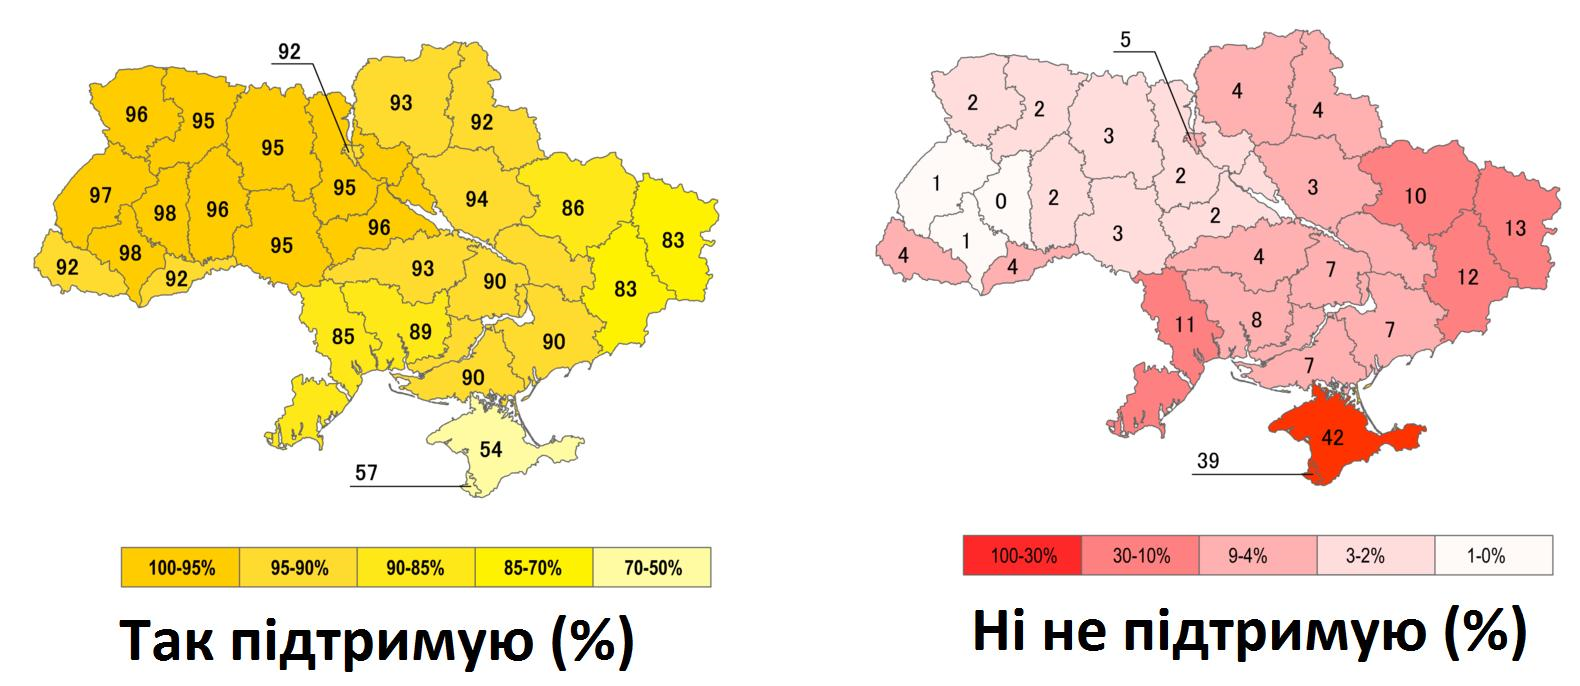 Украина 1991 год карта. Карта Украины референдум 1991. Всеукраинский референдум (1991)независимость Украины. Карта Украины 1991 года. Карта референдума 1991 года на Украине.